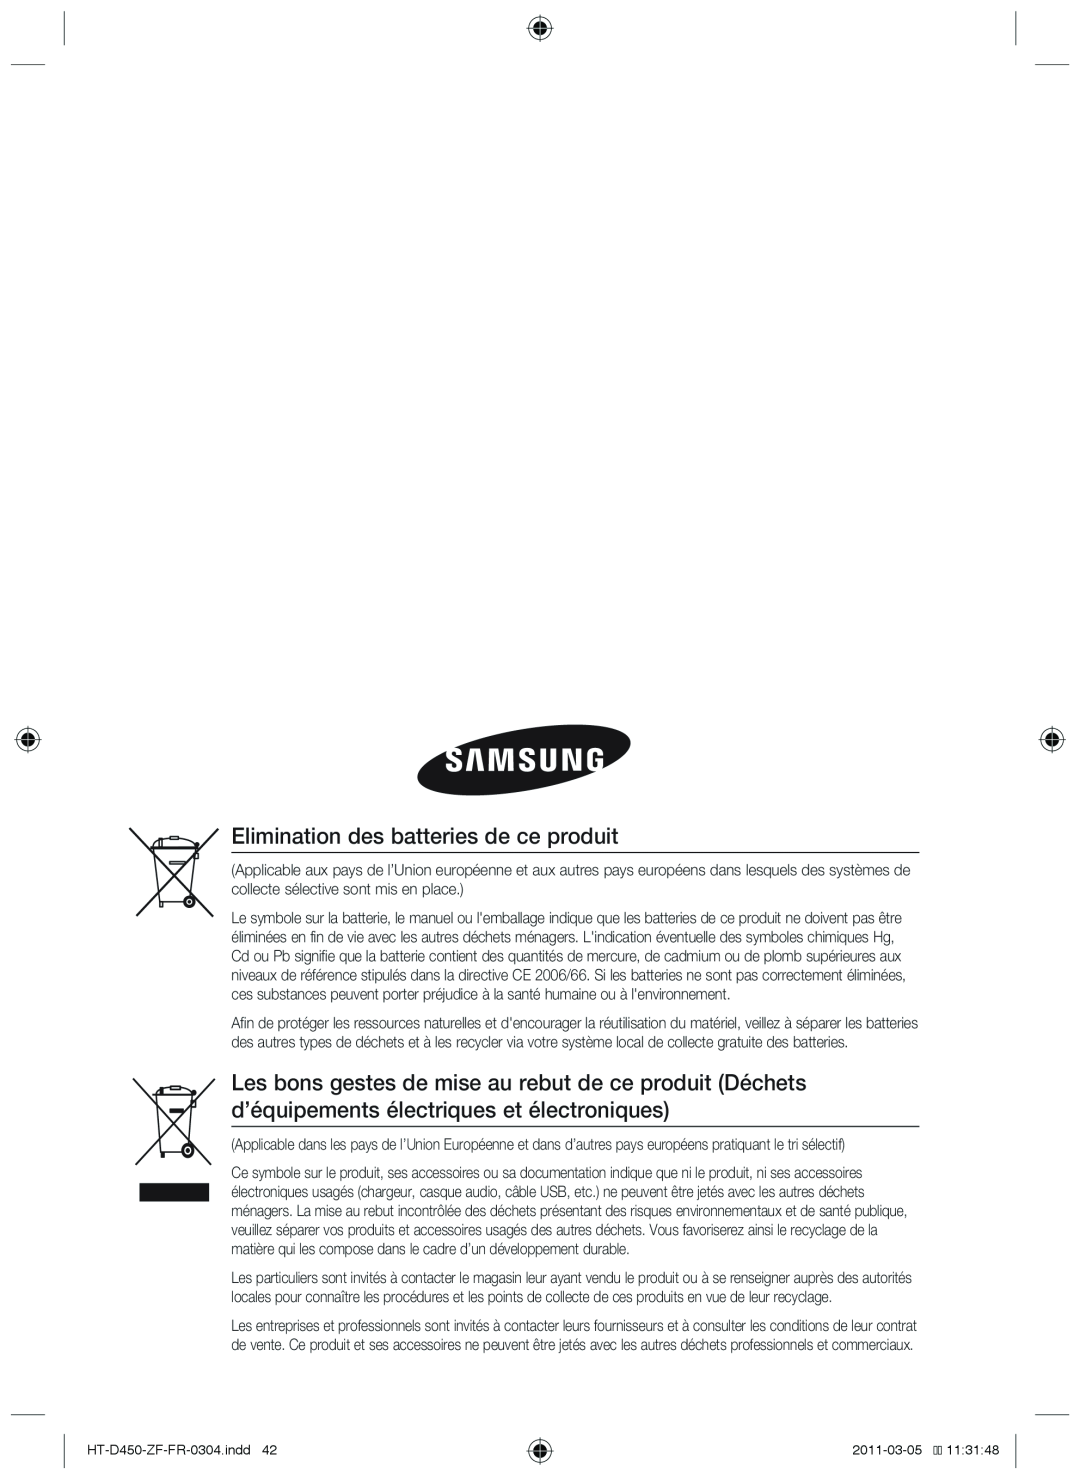 Samsung Elimination des batteries de ce produit, Code No. AH68-02259B, HT-D450-ZF-FR-0304.indd42, 2011-03-0511:31:48 